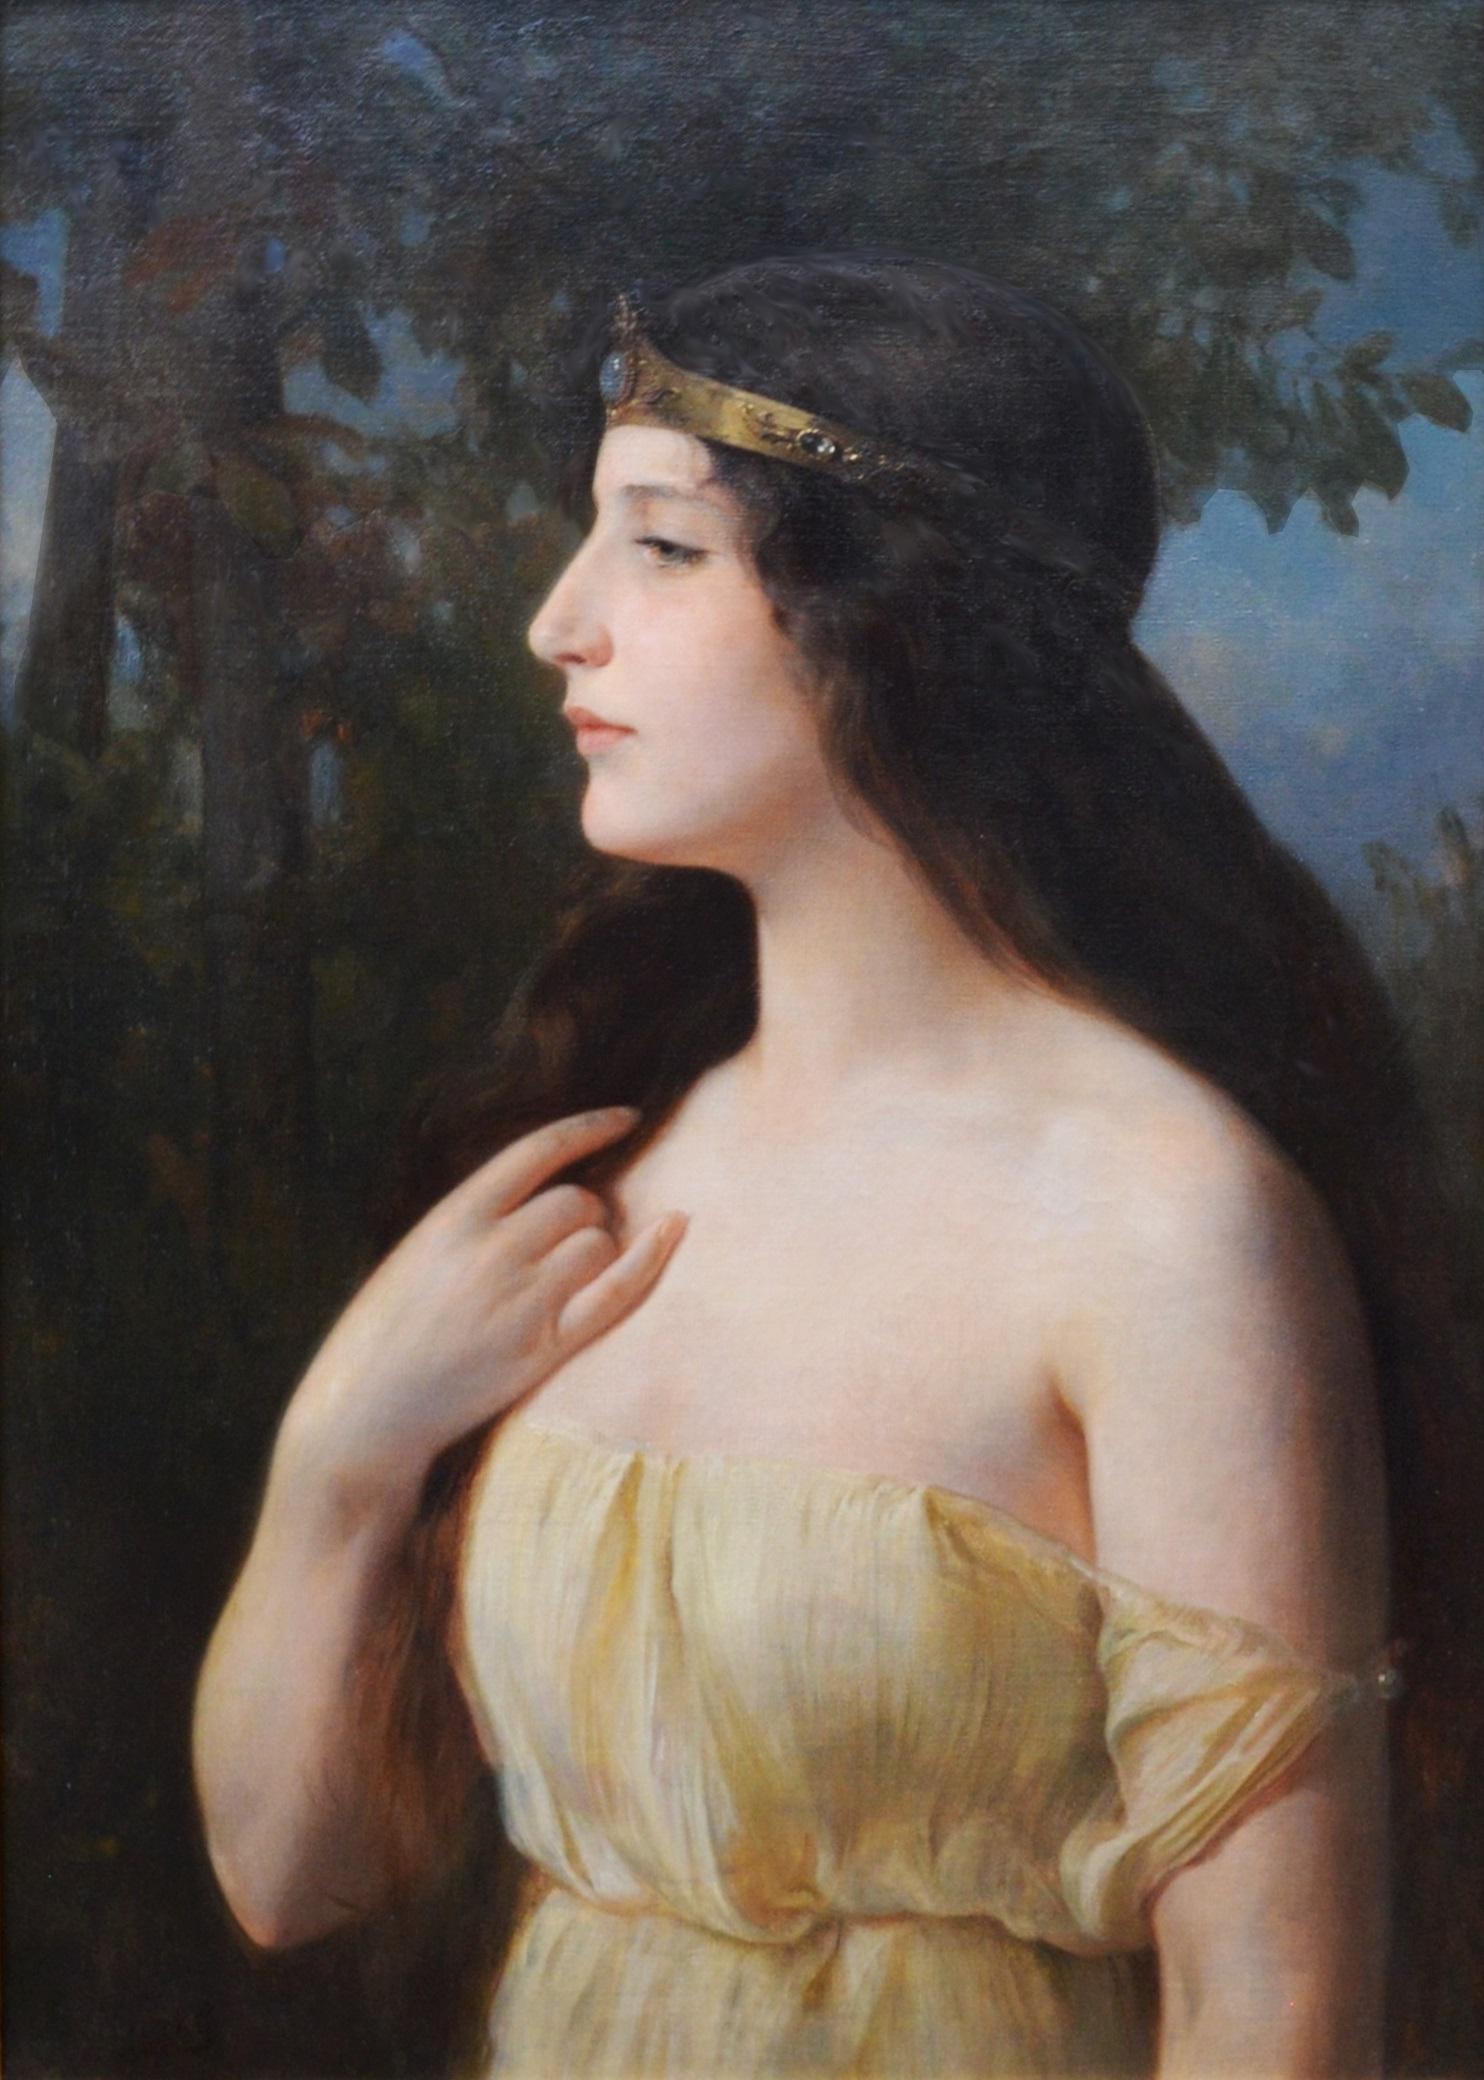 Goddess Hera - Neoklassizistisches Ölgemälde der griechischen Mythologie aus dem 19. Jahrhundert (Realismus), Painting, von Eduard Niczky